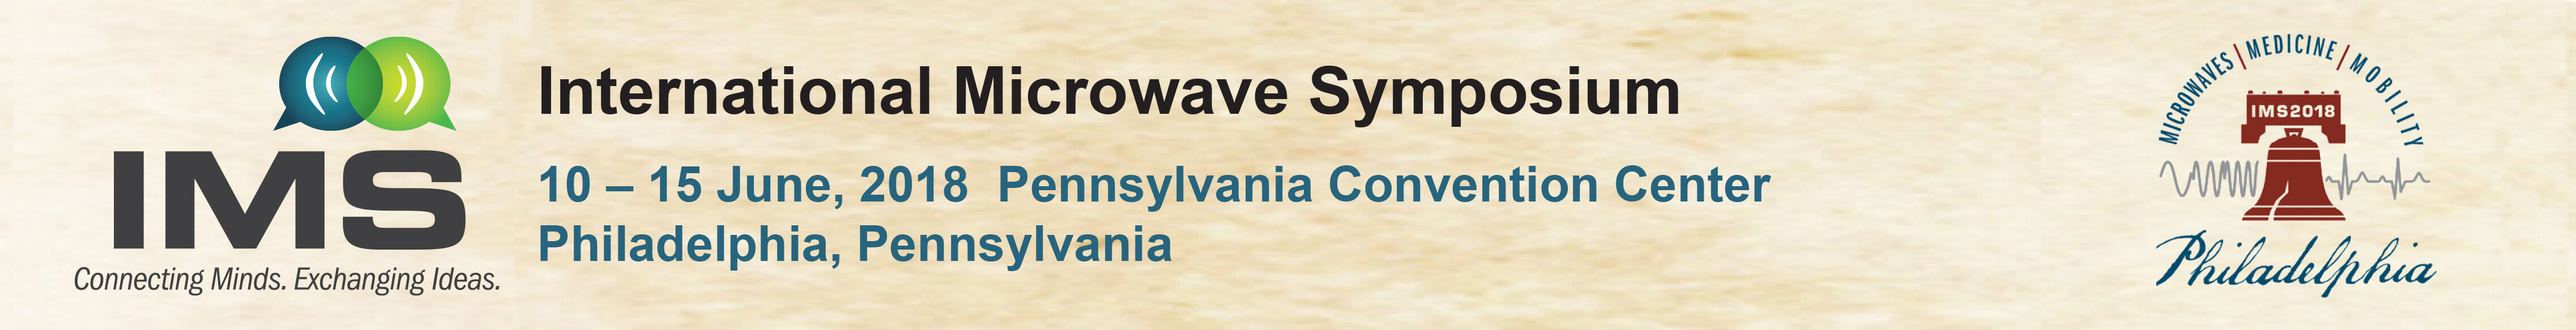 Header evenement ALPHA-RLH International Microwave Symposium 2018 (IMS) à Philadelphie